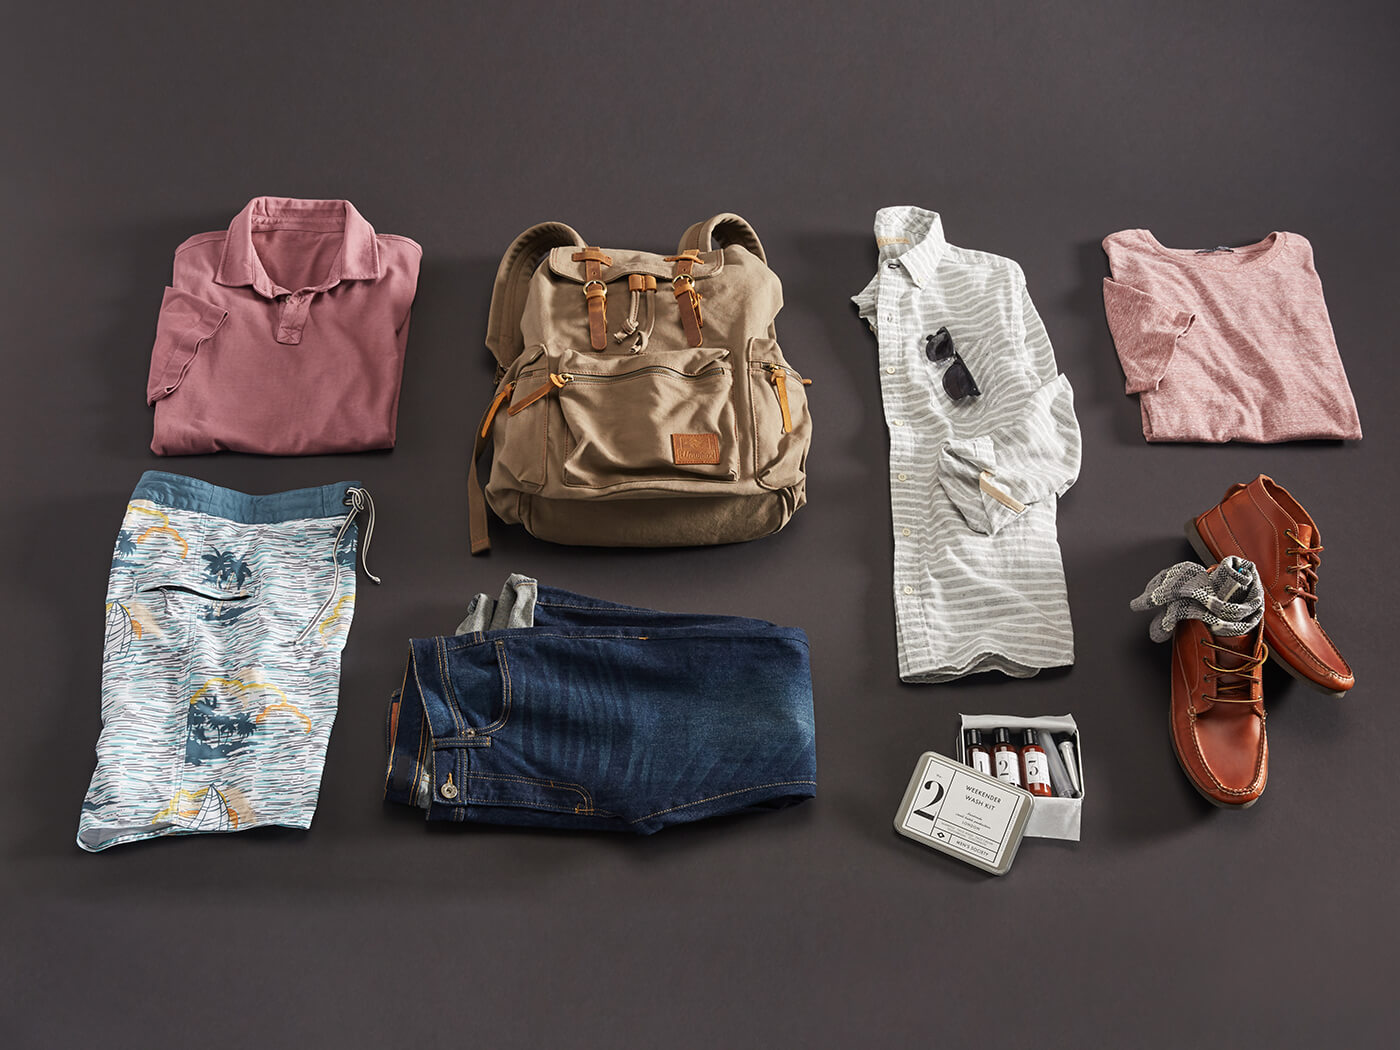 Three ways to wear: weekend bags